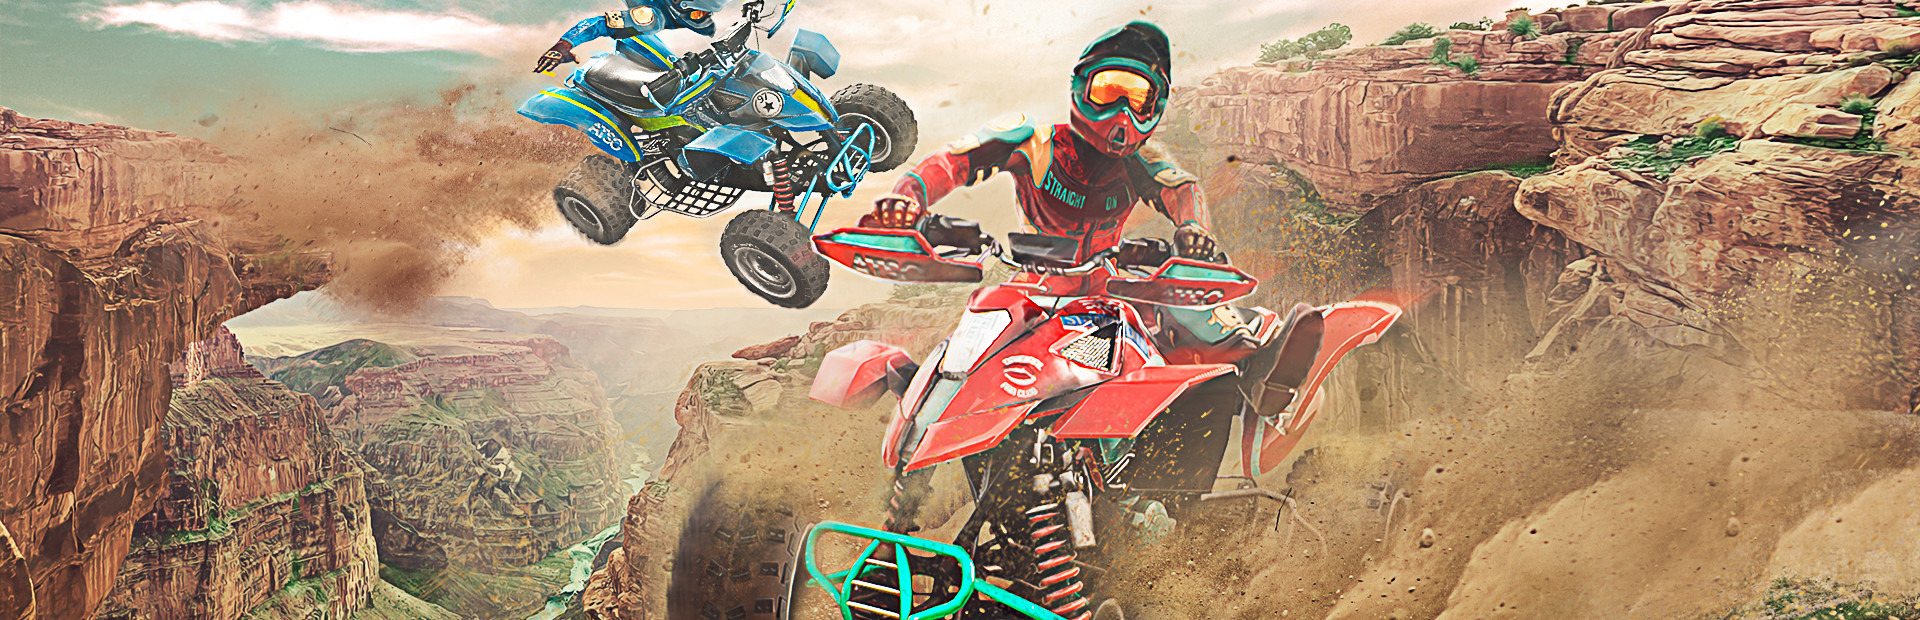 ATV Drift & Tricks cover image